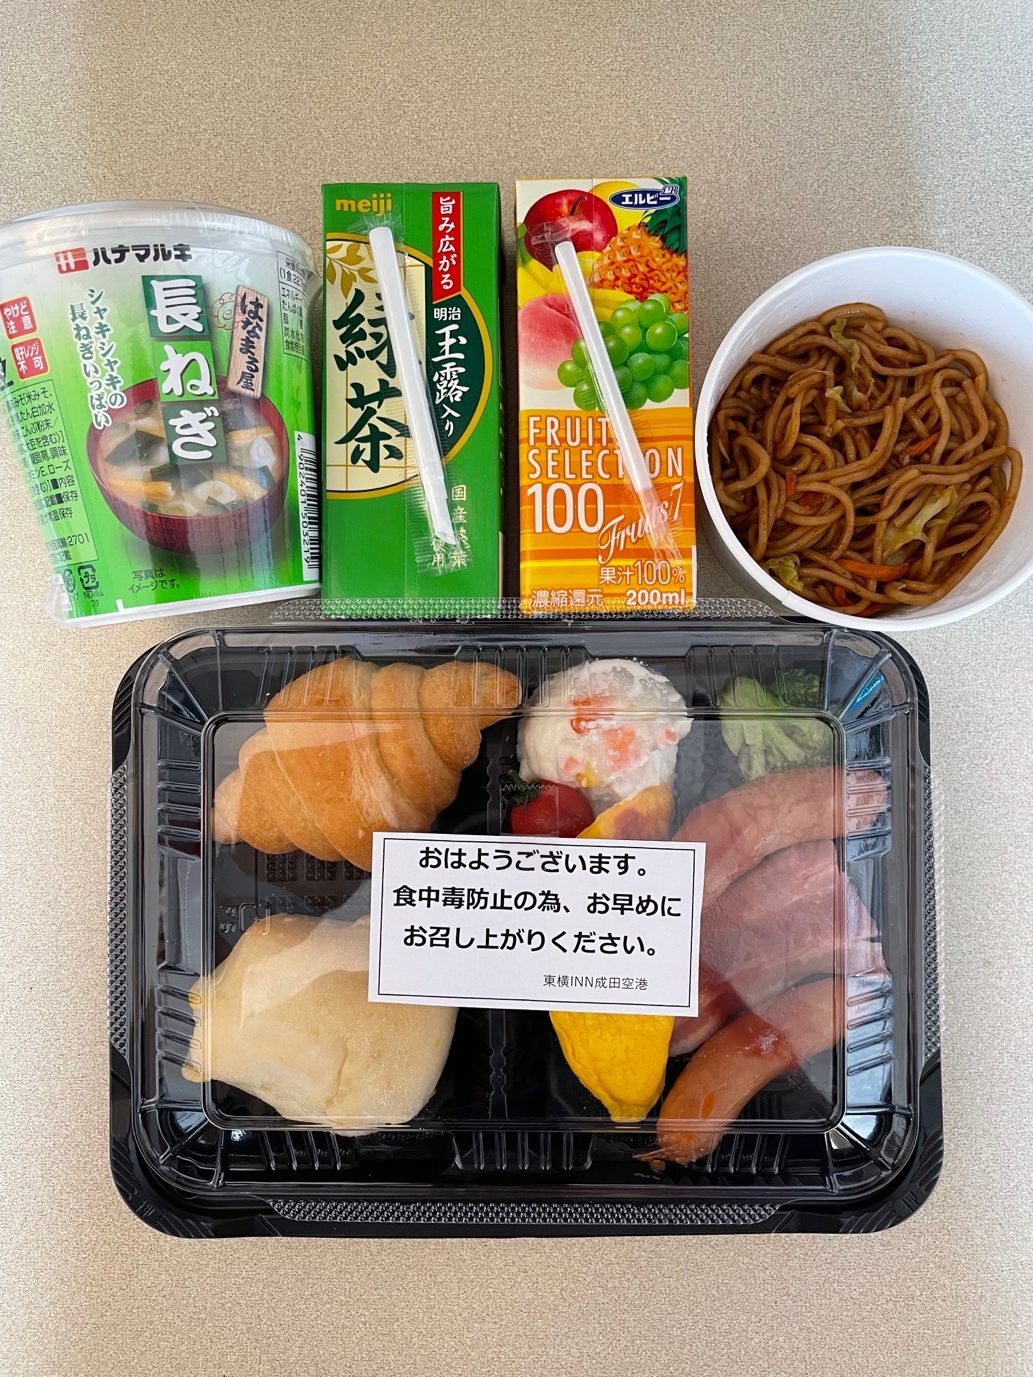 Quarantine Food in Japan